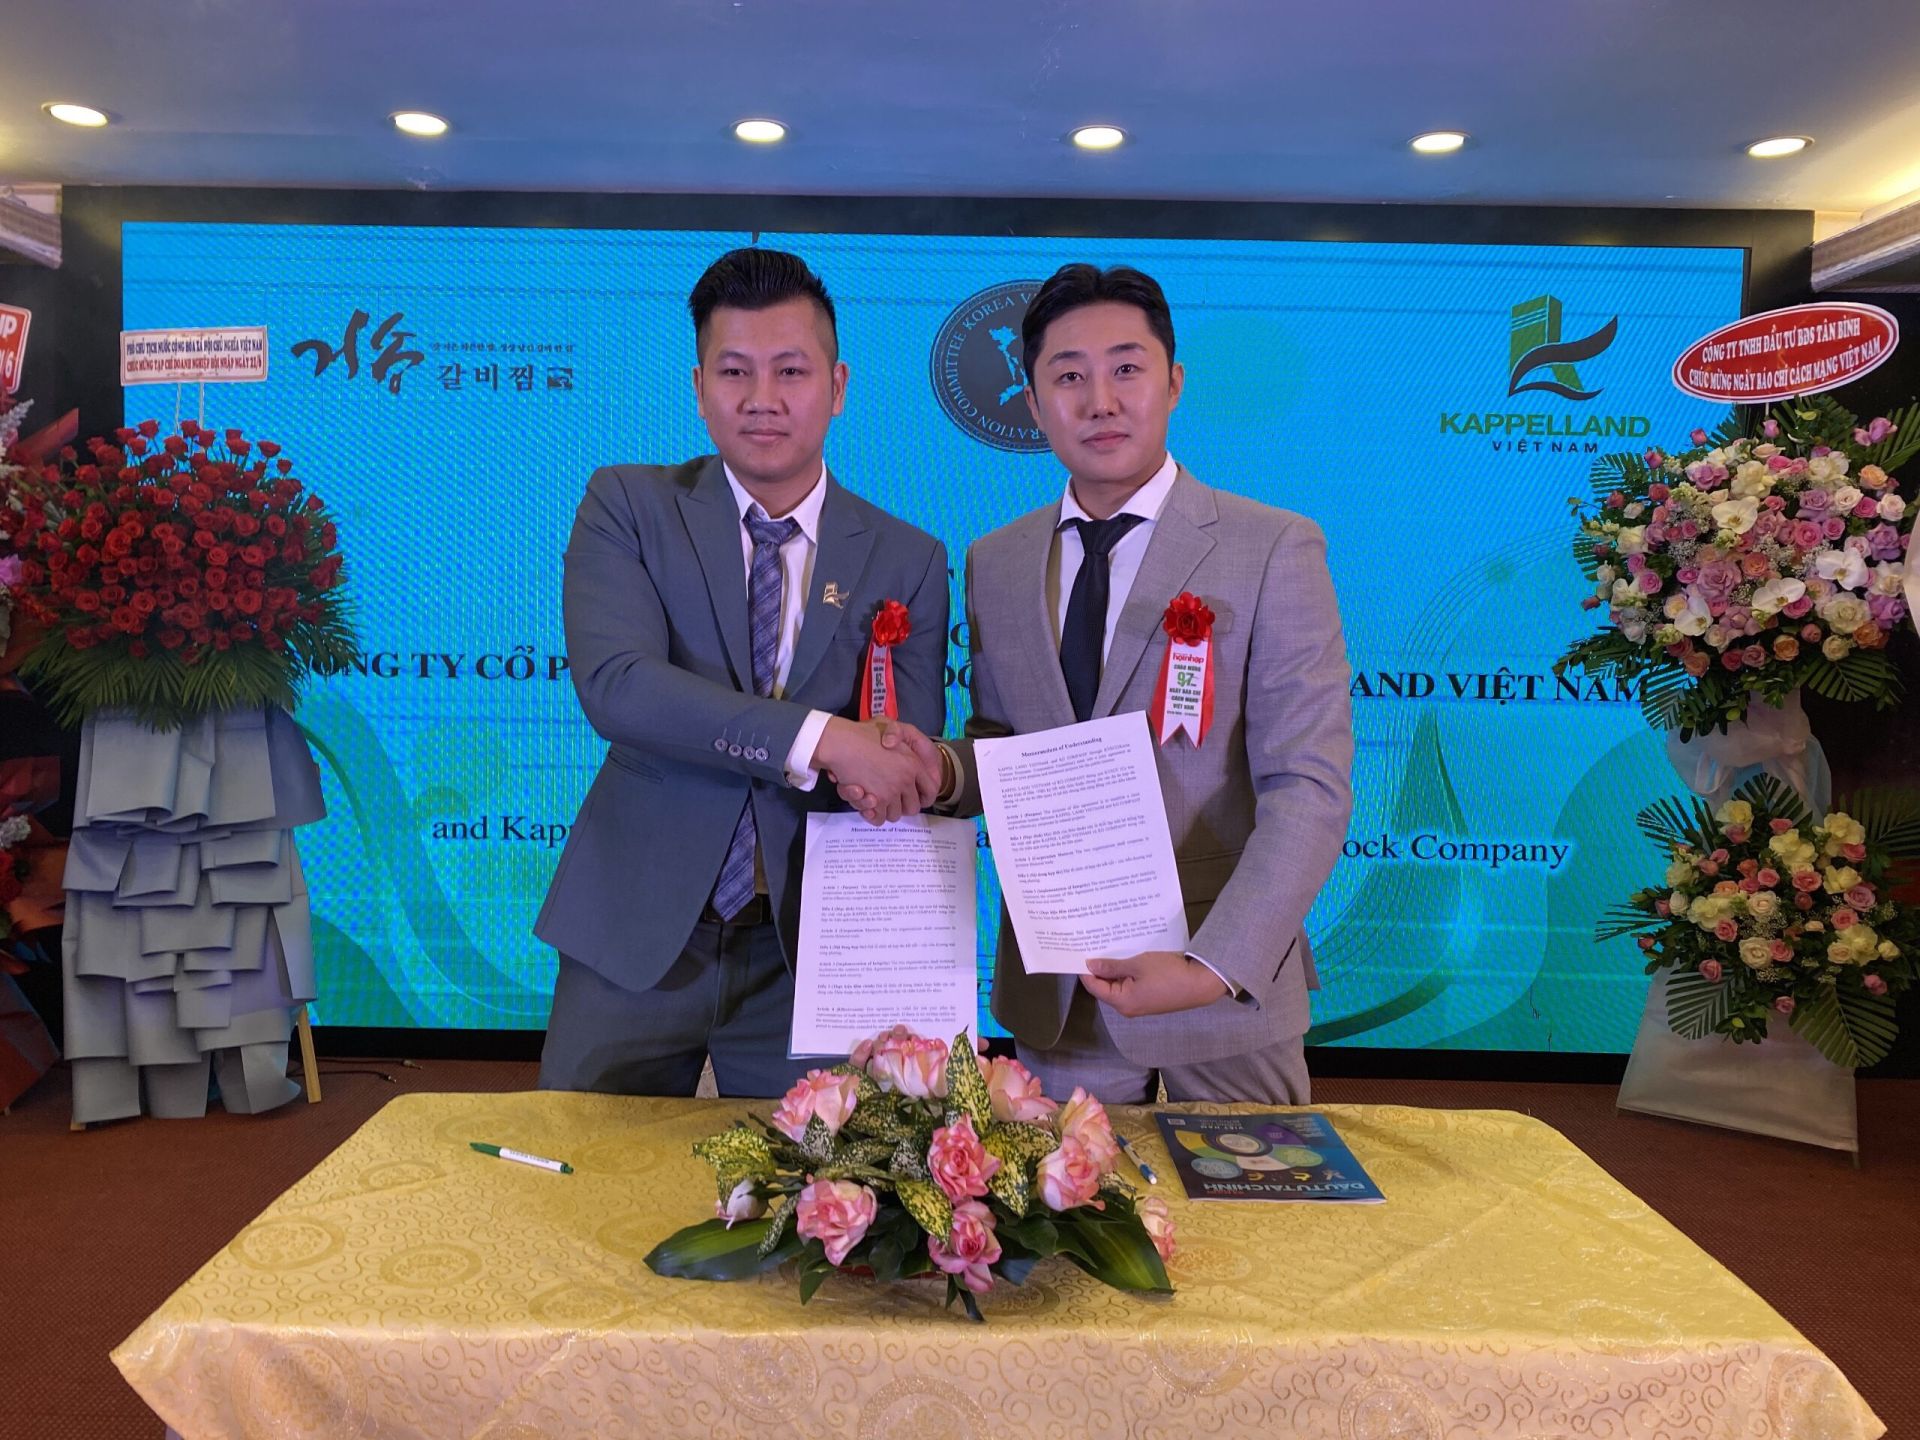 Ông Park Hyun-gyu, Giám đốc điều hành của Công ty KG (Hàn Quốc)
trong lễ ký kết MOU (Biên bản ghi nhớ) hợp tác với doanh nghiệp Việt
Nam